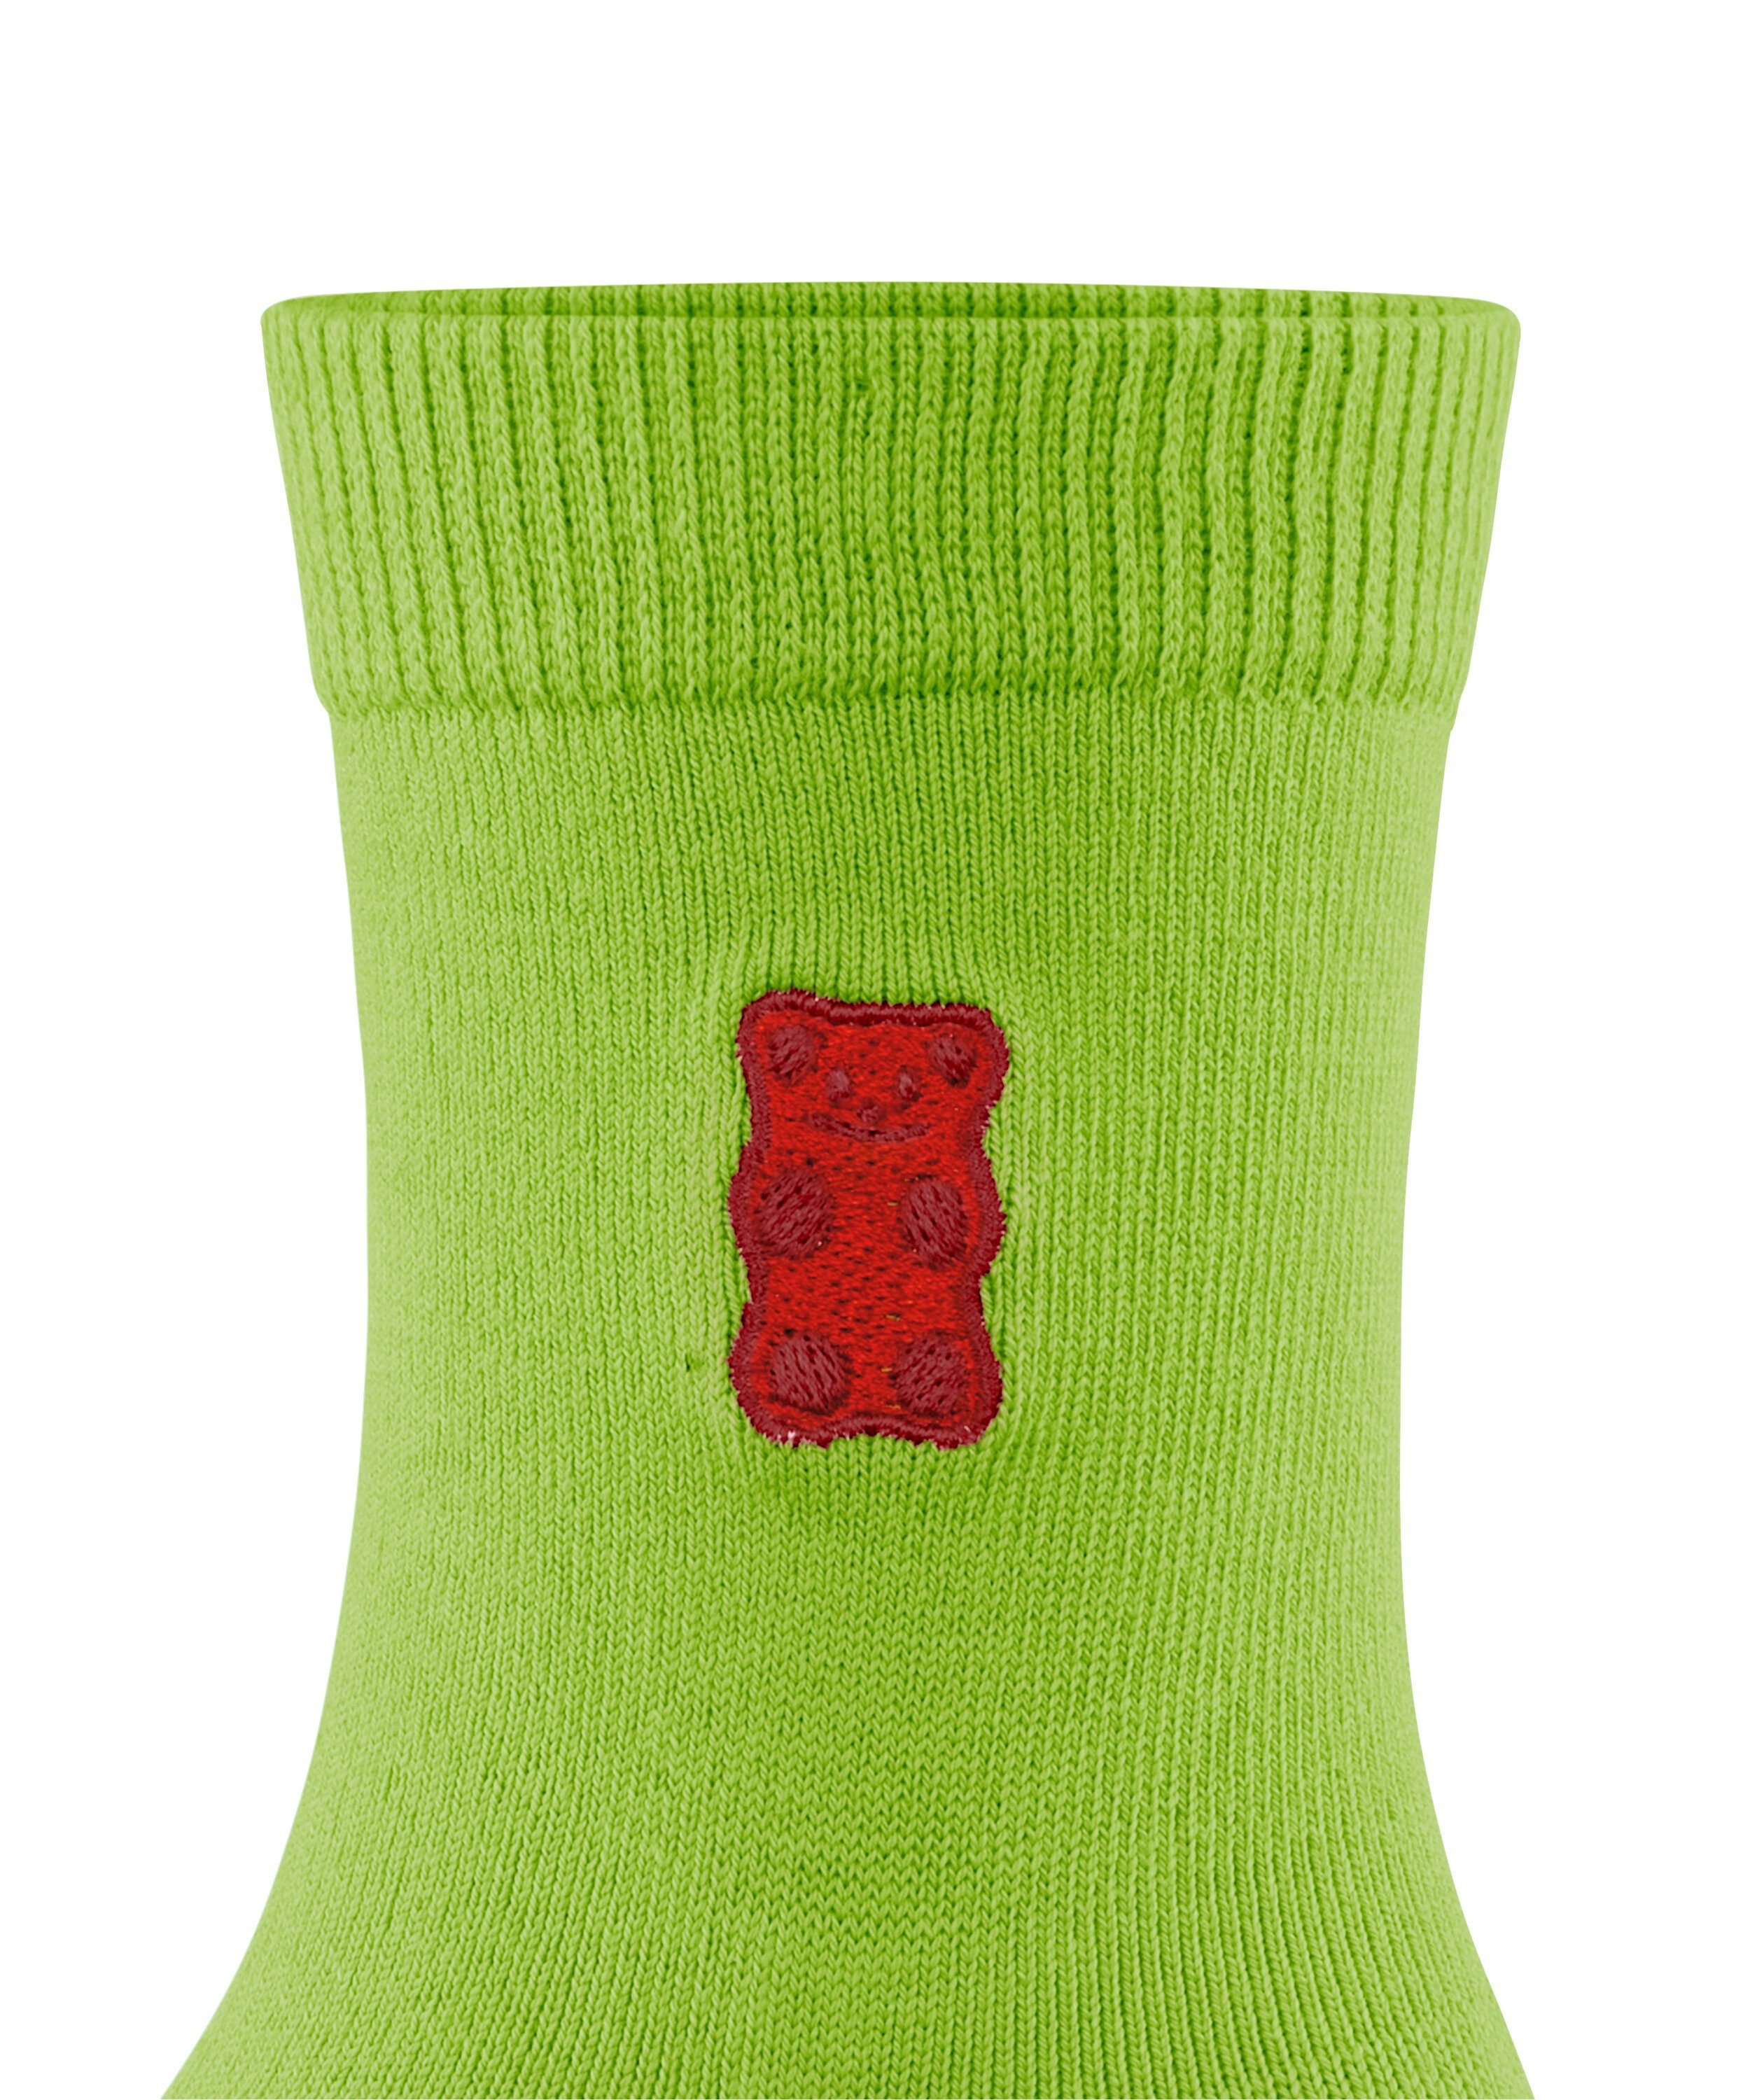 FALKE (1-Paar) x leaf Haribo FALKE Socken (7600) green